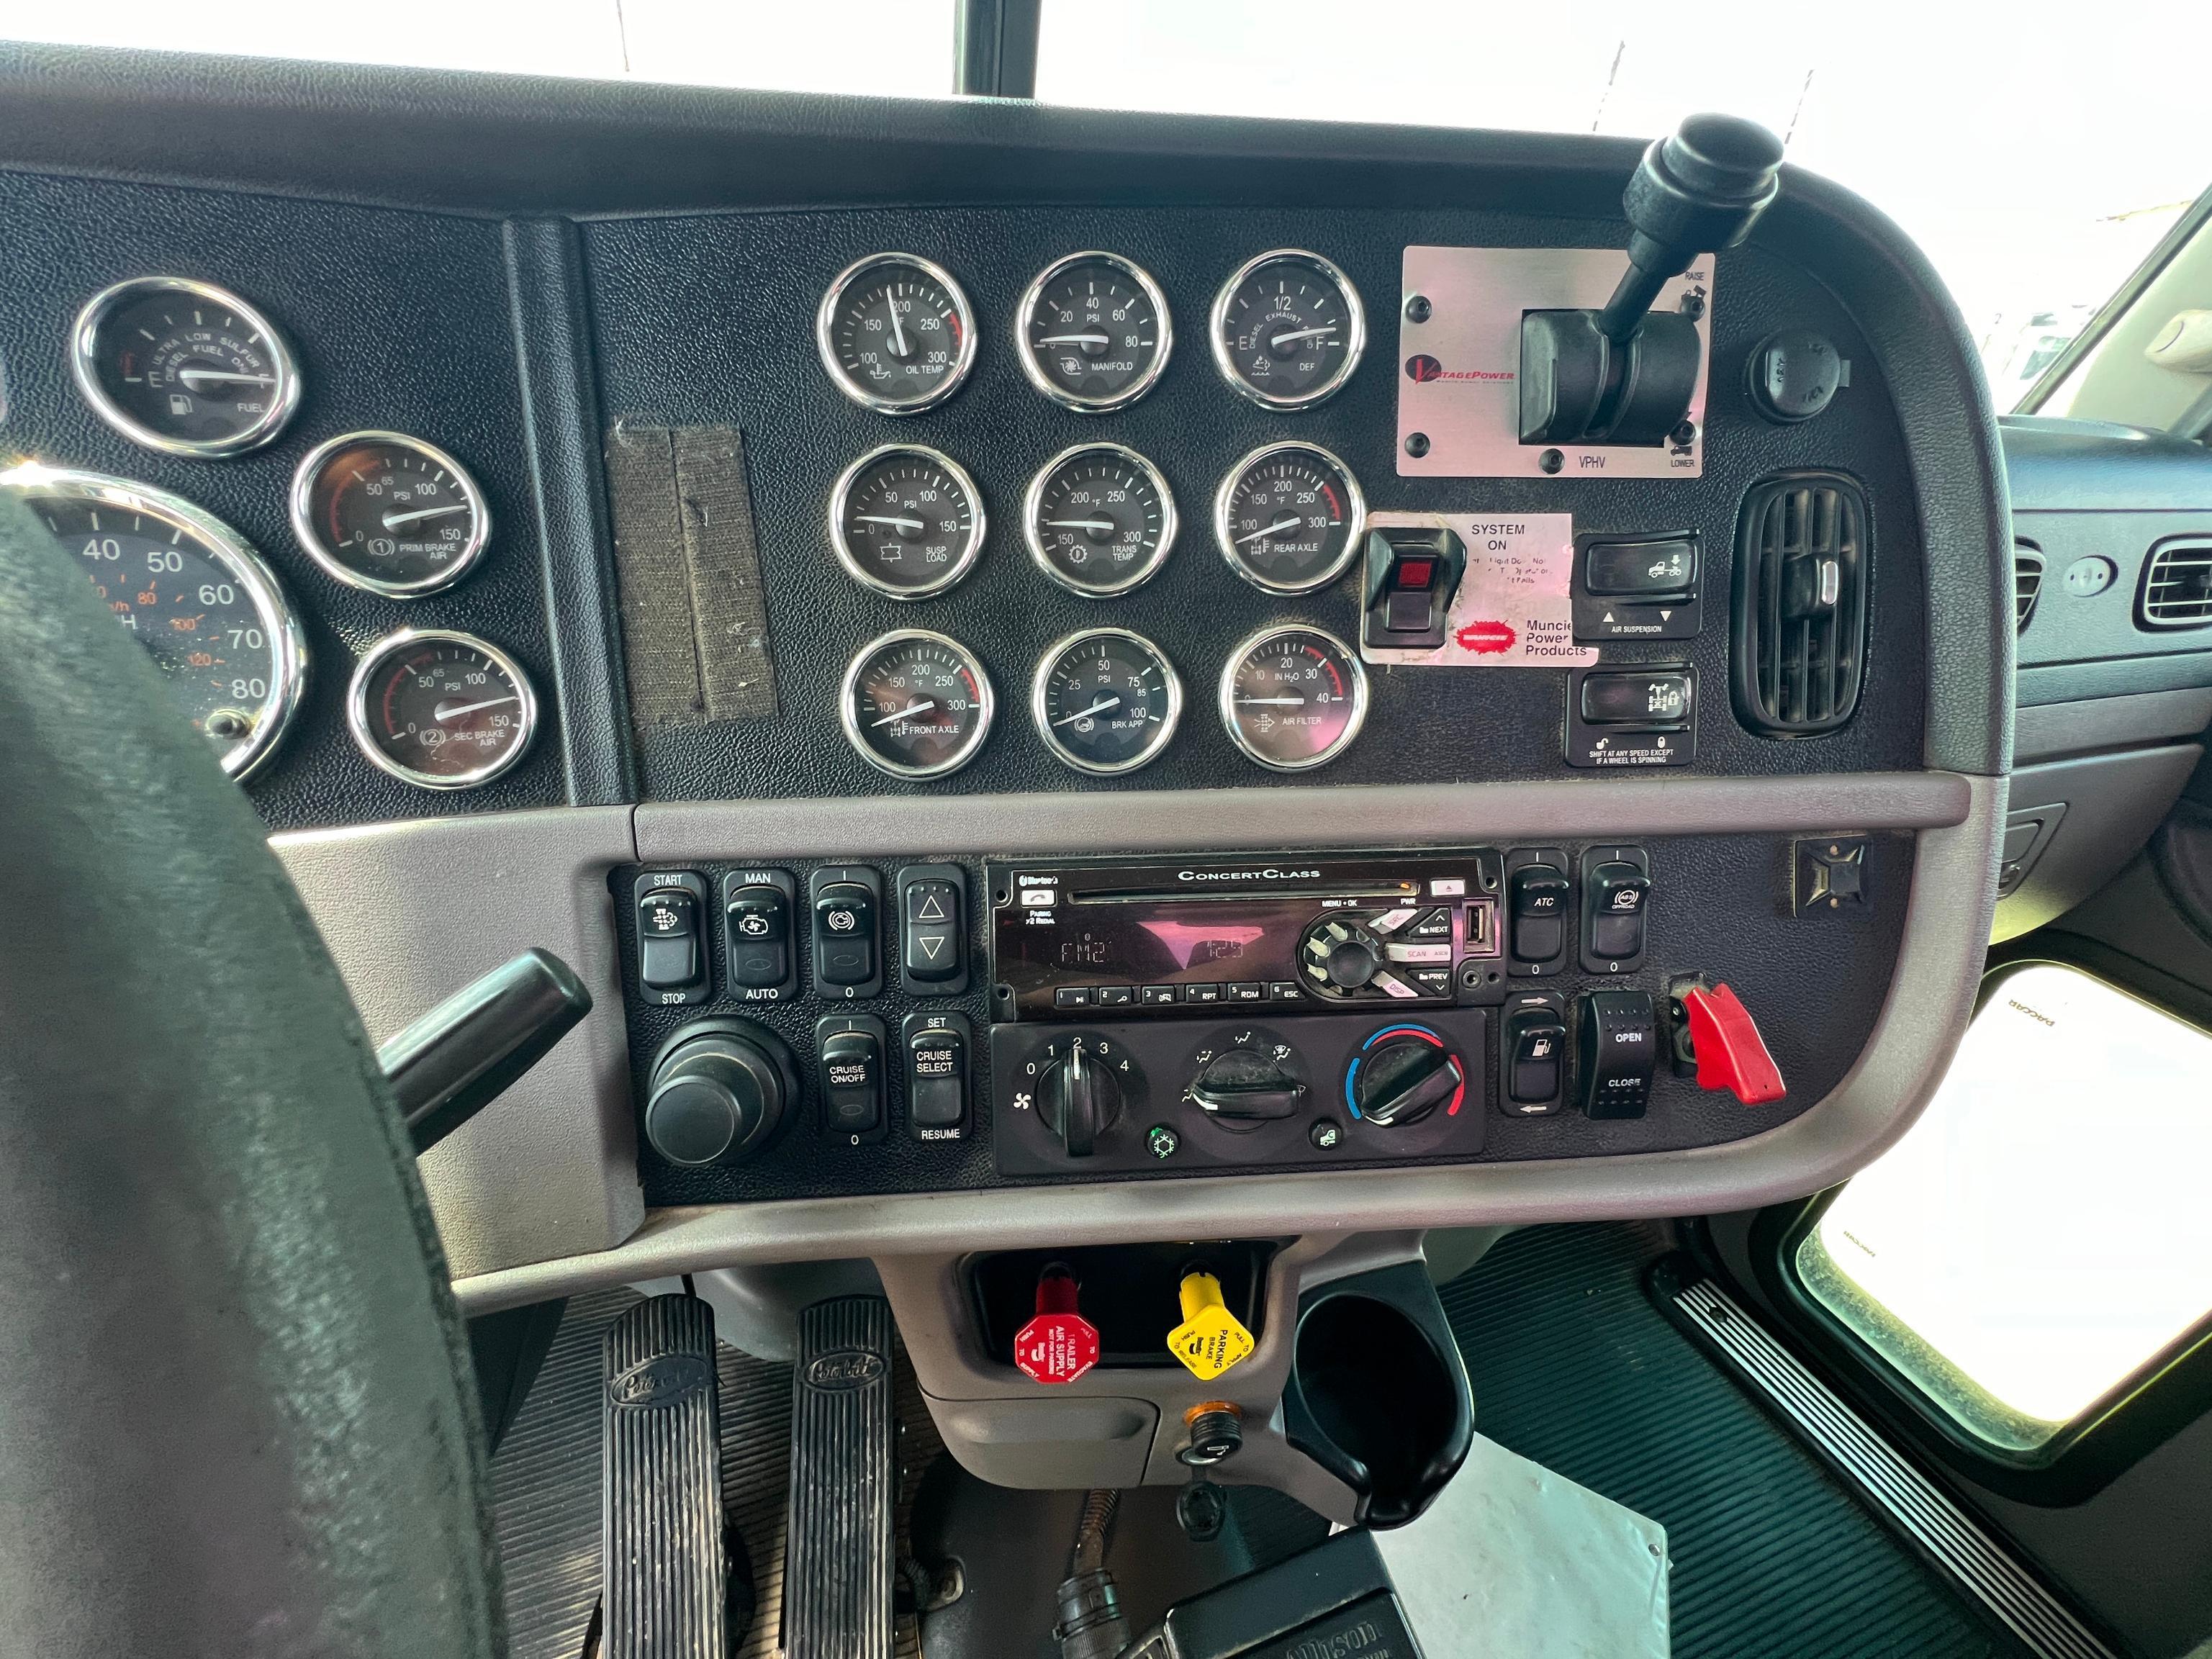 2017 PETERBILT 389 TRUCK TRACTOR VN:1XPXD49X2HD362232...powered by Cummins ISX15 diesel engine,